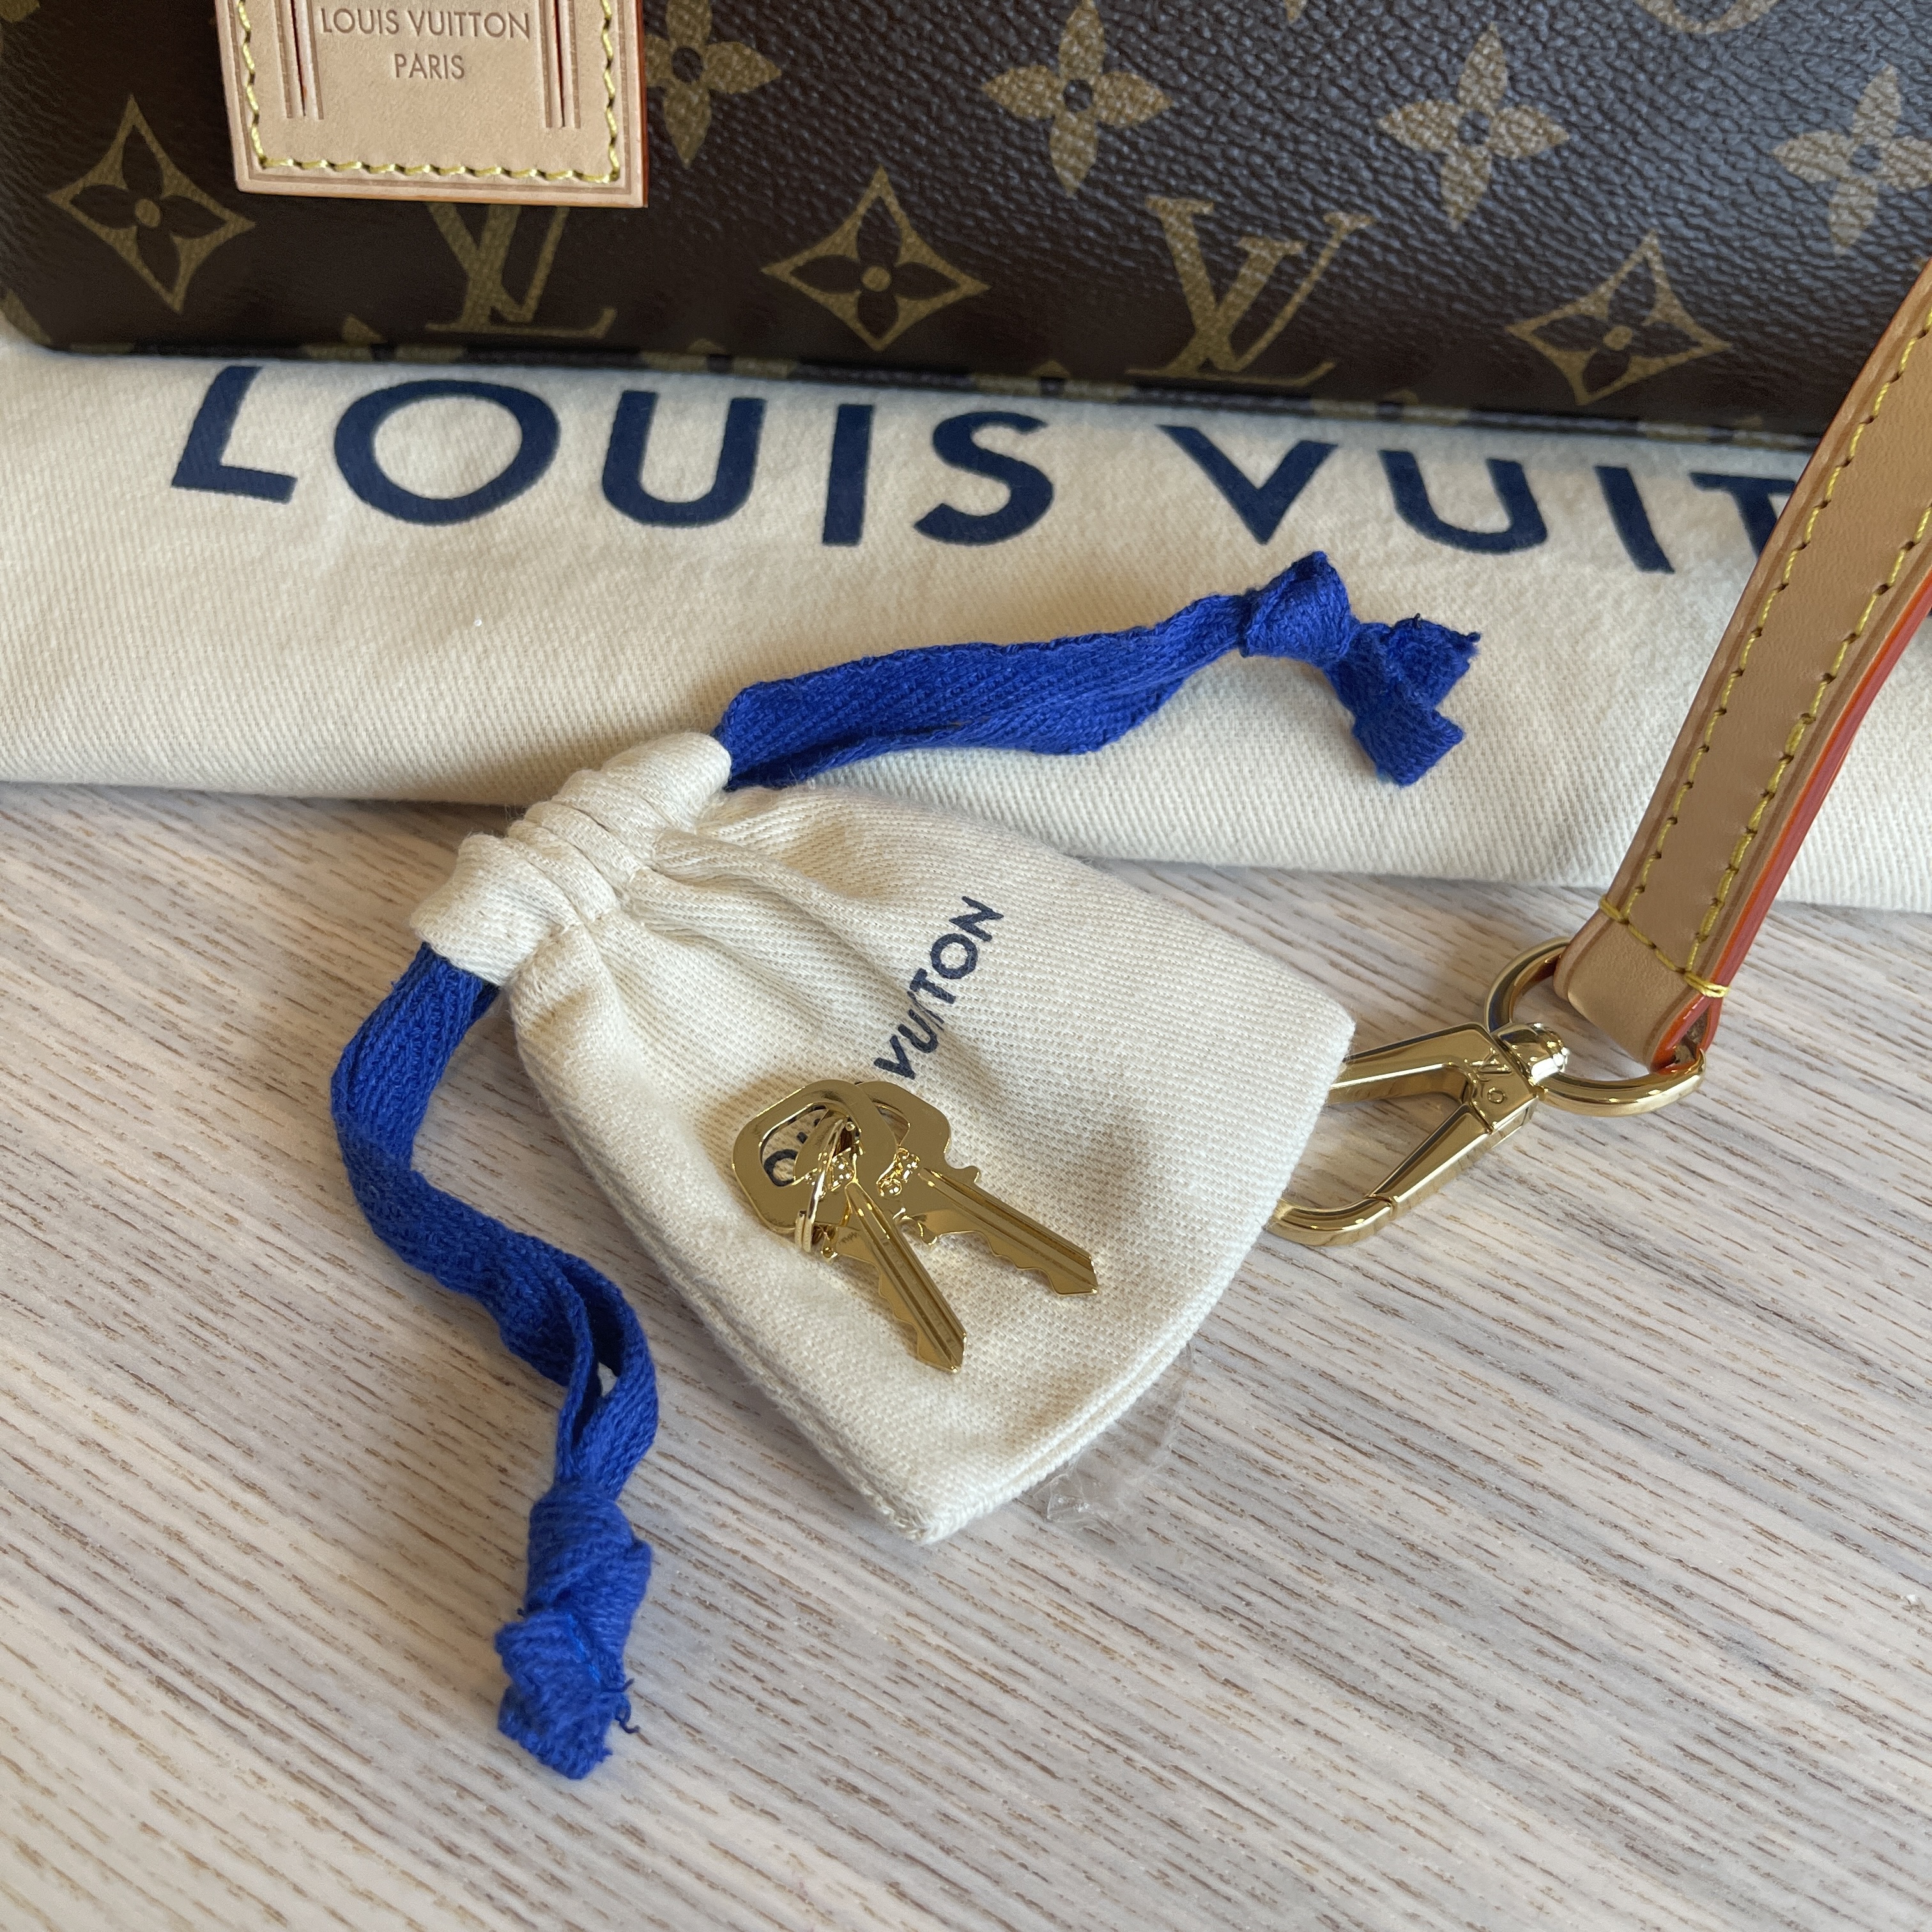 Louis Vuitton Petit Palais Bag - 2 For Sale on 1stDibs  petit palais louis  vuitton price, petit palais vuitton, petite palais lv